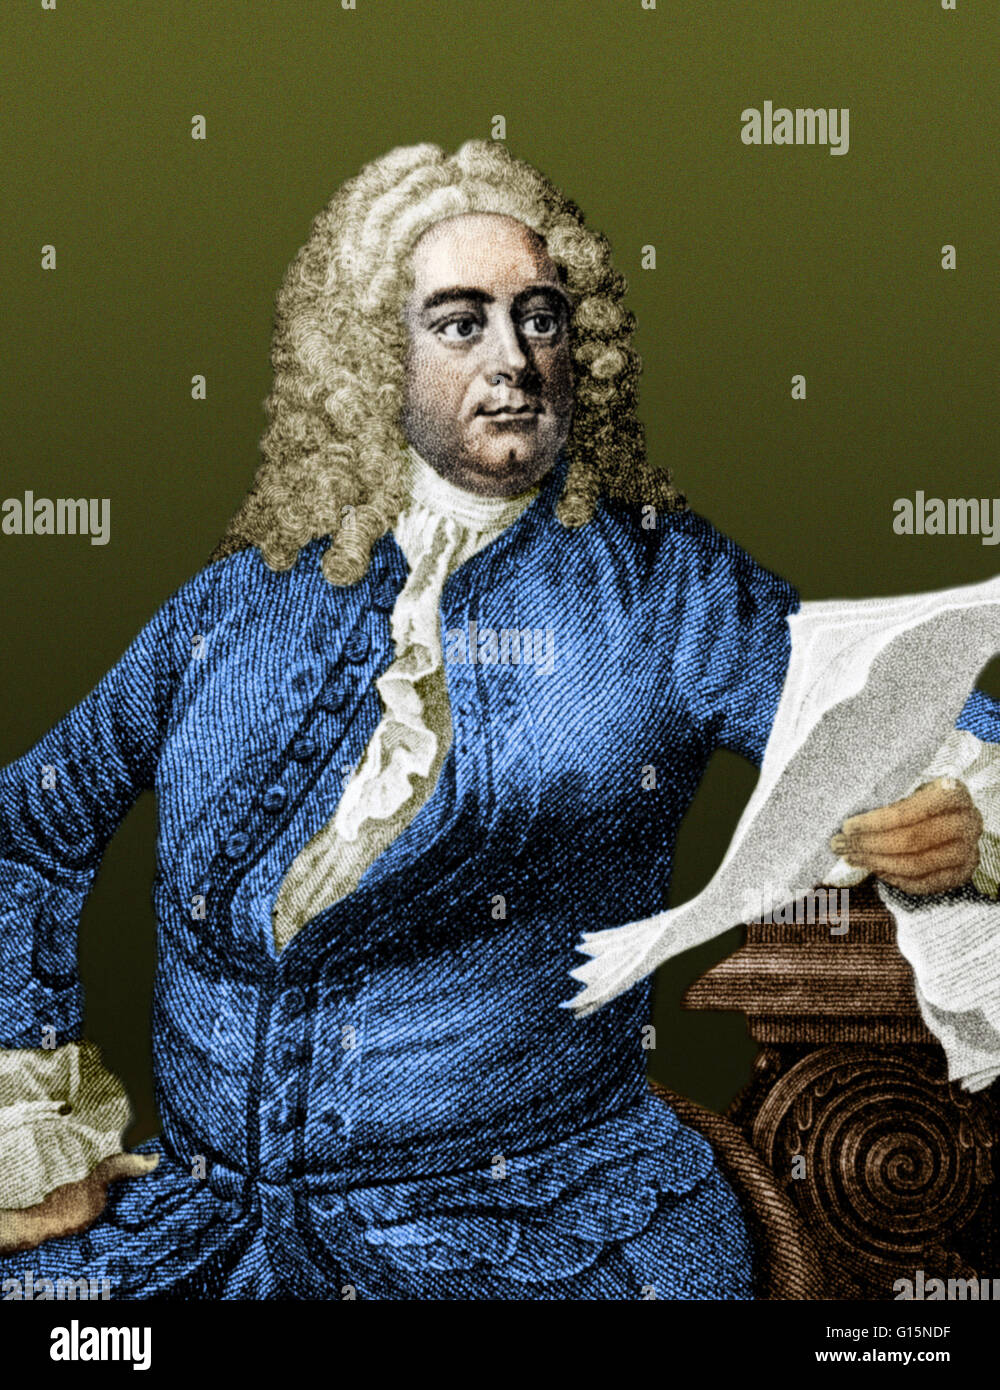 George Frideric Handel (5 mars 1685 - 14 avril 1759) était un compositeur baroque anglo-allemande, célèbre pour ses opéras, oratorios, anthems et orgue concertos. Il a reçu une formation musicale critique à Halle, Hambourg et l'Italie avant de s'installer à Londres (1712 Banque D'Images